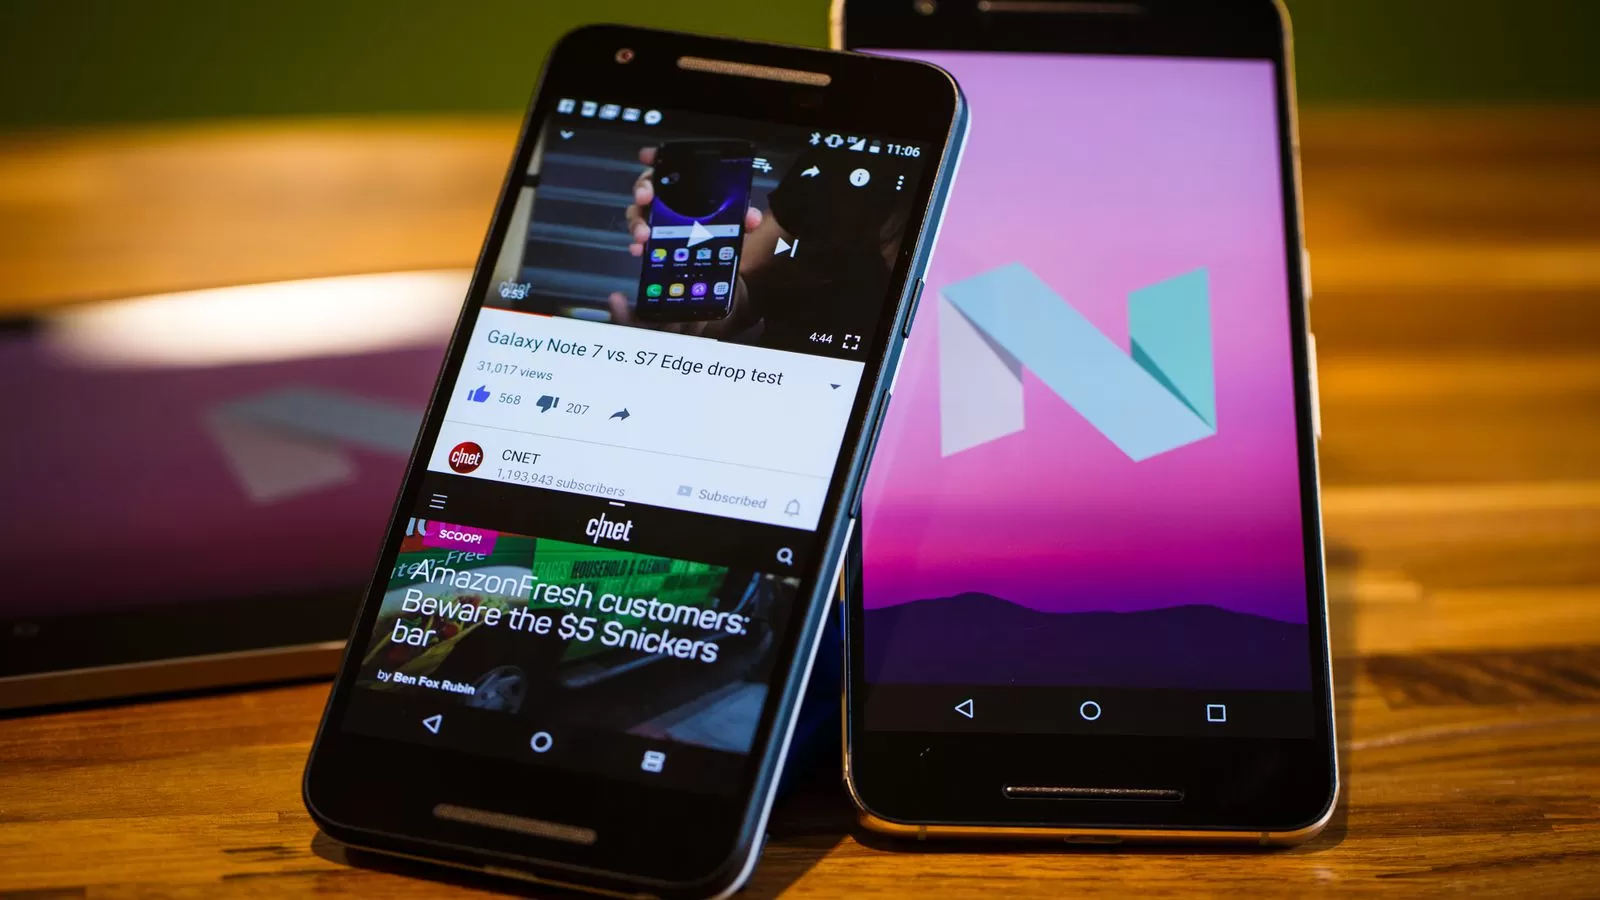 android nougat 3723 011 | Android 7.0 Nougat | ใกล้เข้ามาอีกนิด! เครือข่ายมือถือในออสเตรเลียเผยกำลังทดสอบ Android N สำหรับ Galaxy S7 และ S7 edge